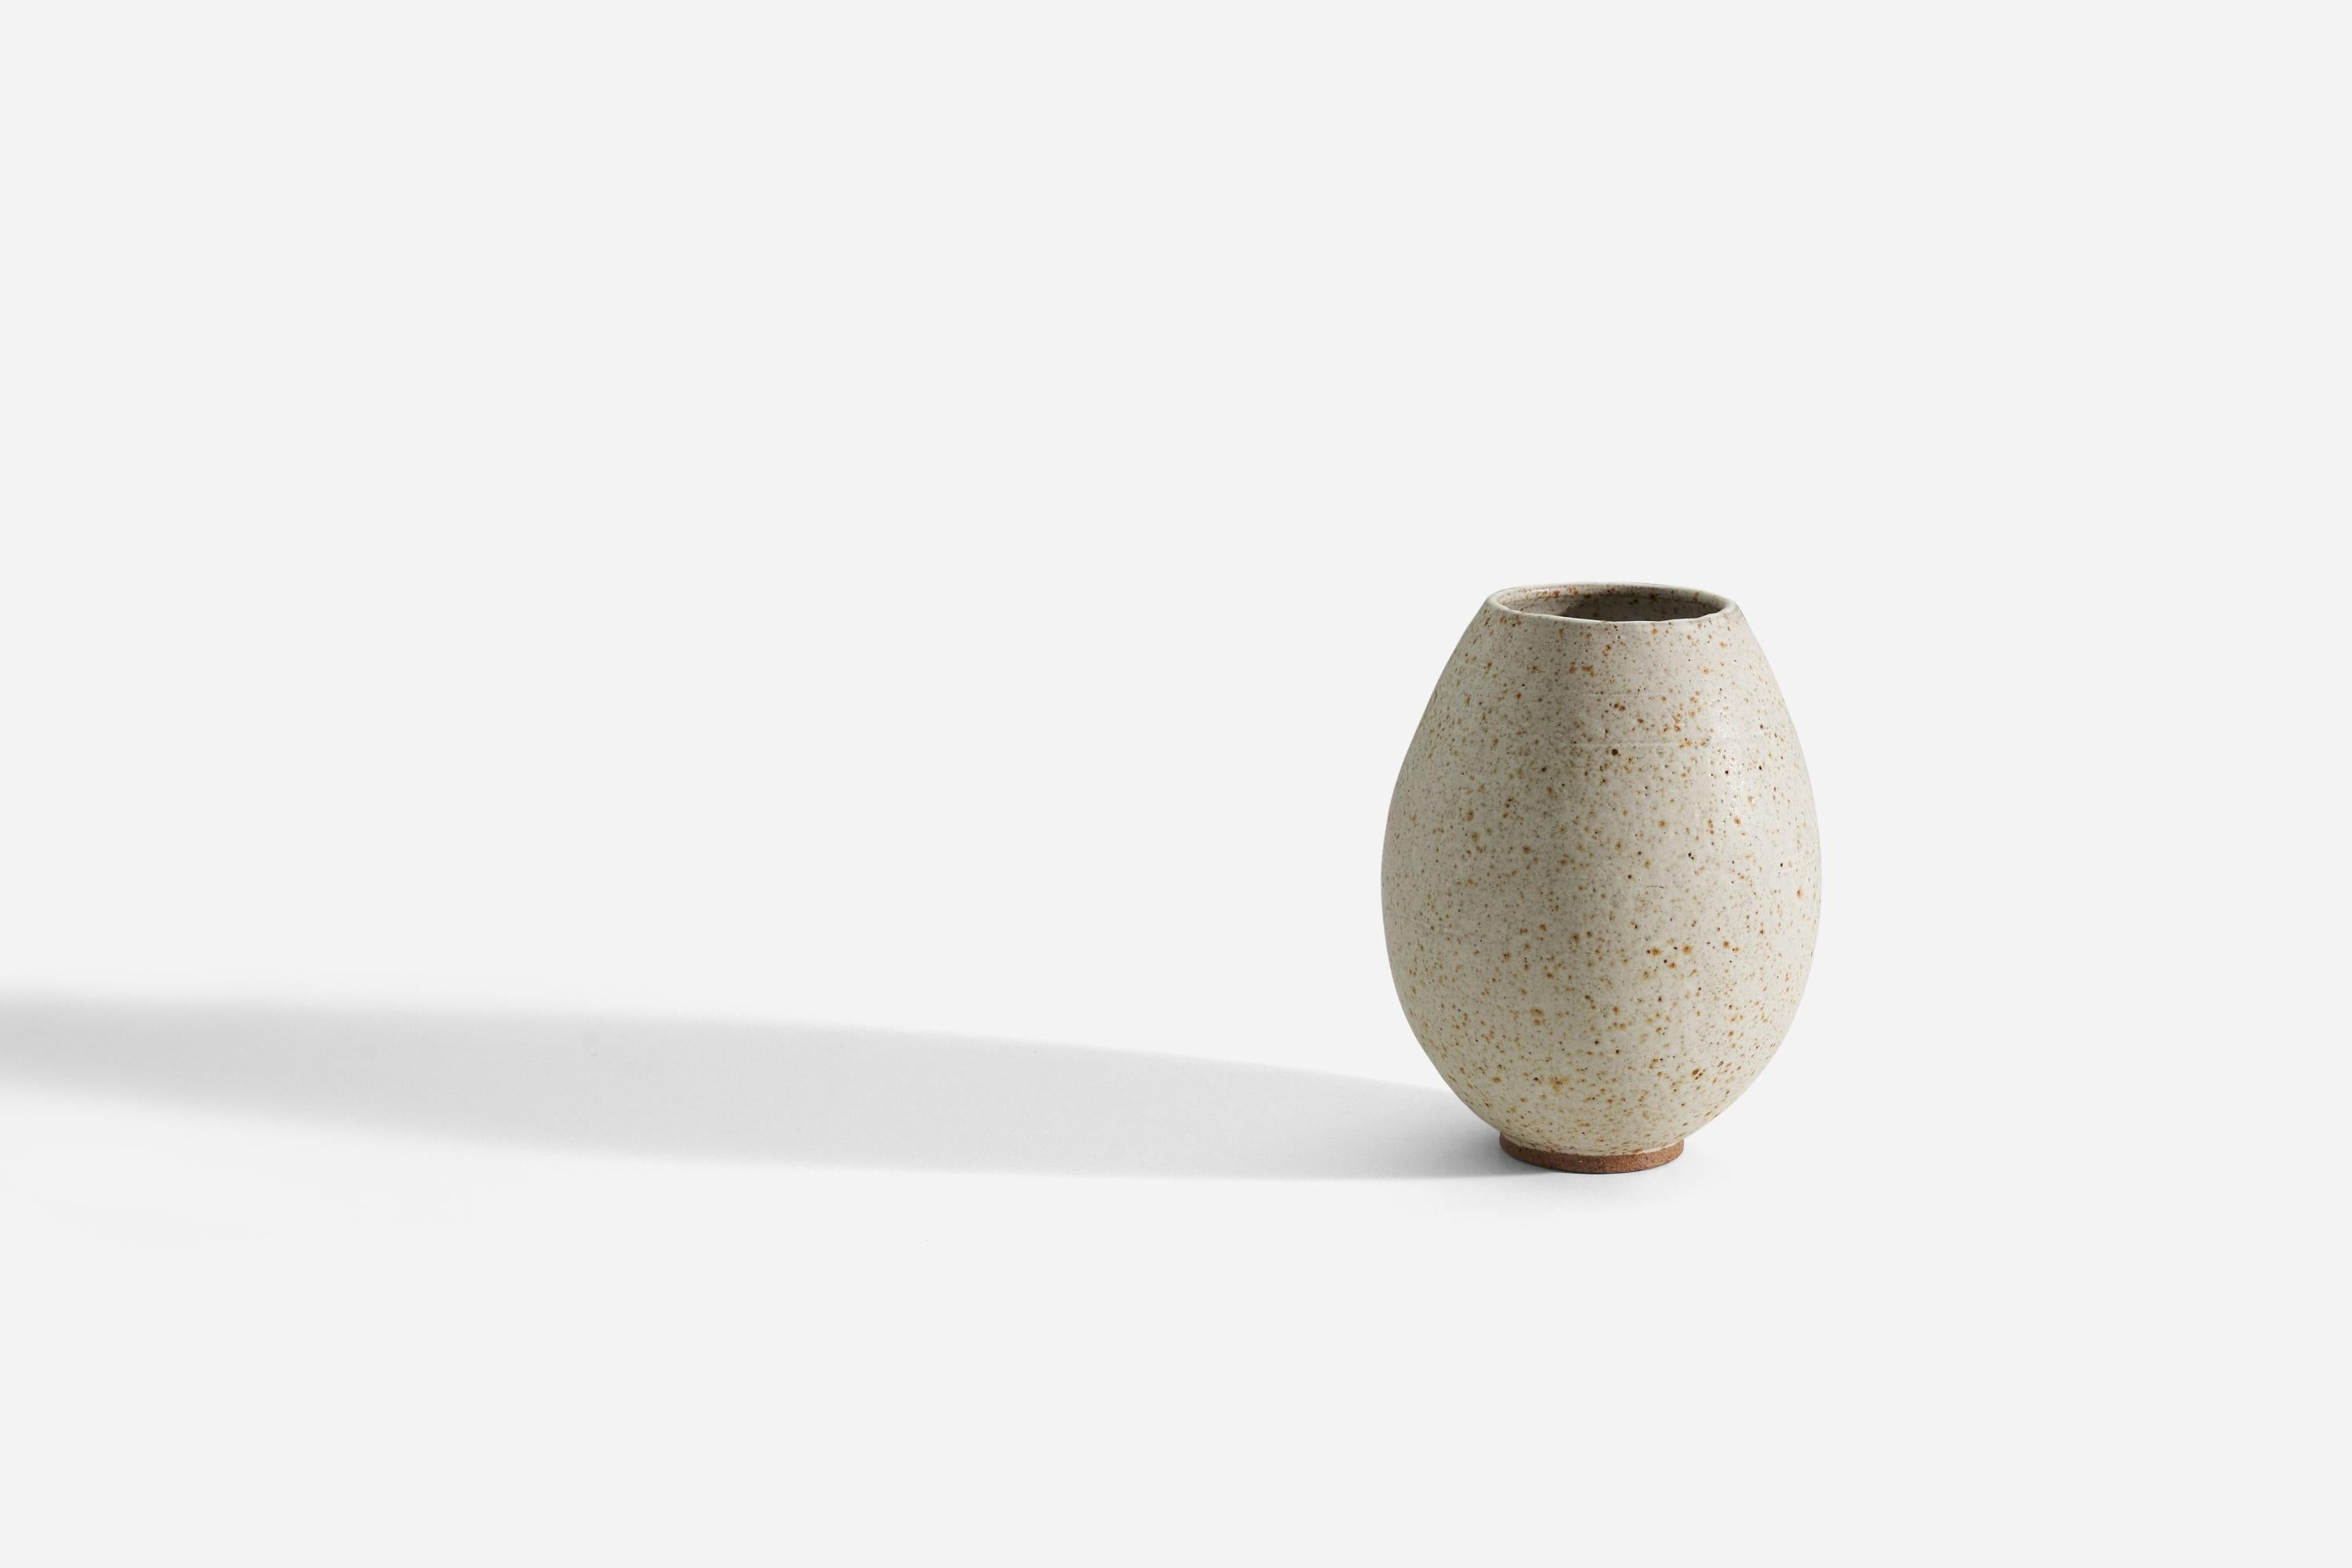 Mid-Century Modern Kjell Boman, Vase, Semi-Glazed Stoneware, Lerhålan, Sweden, 1960s For Sale